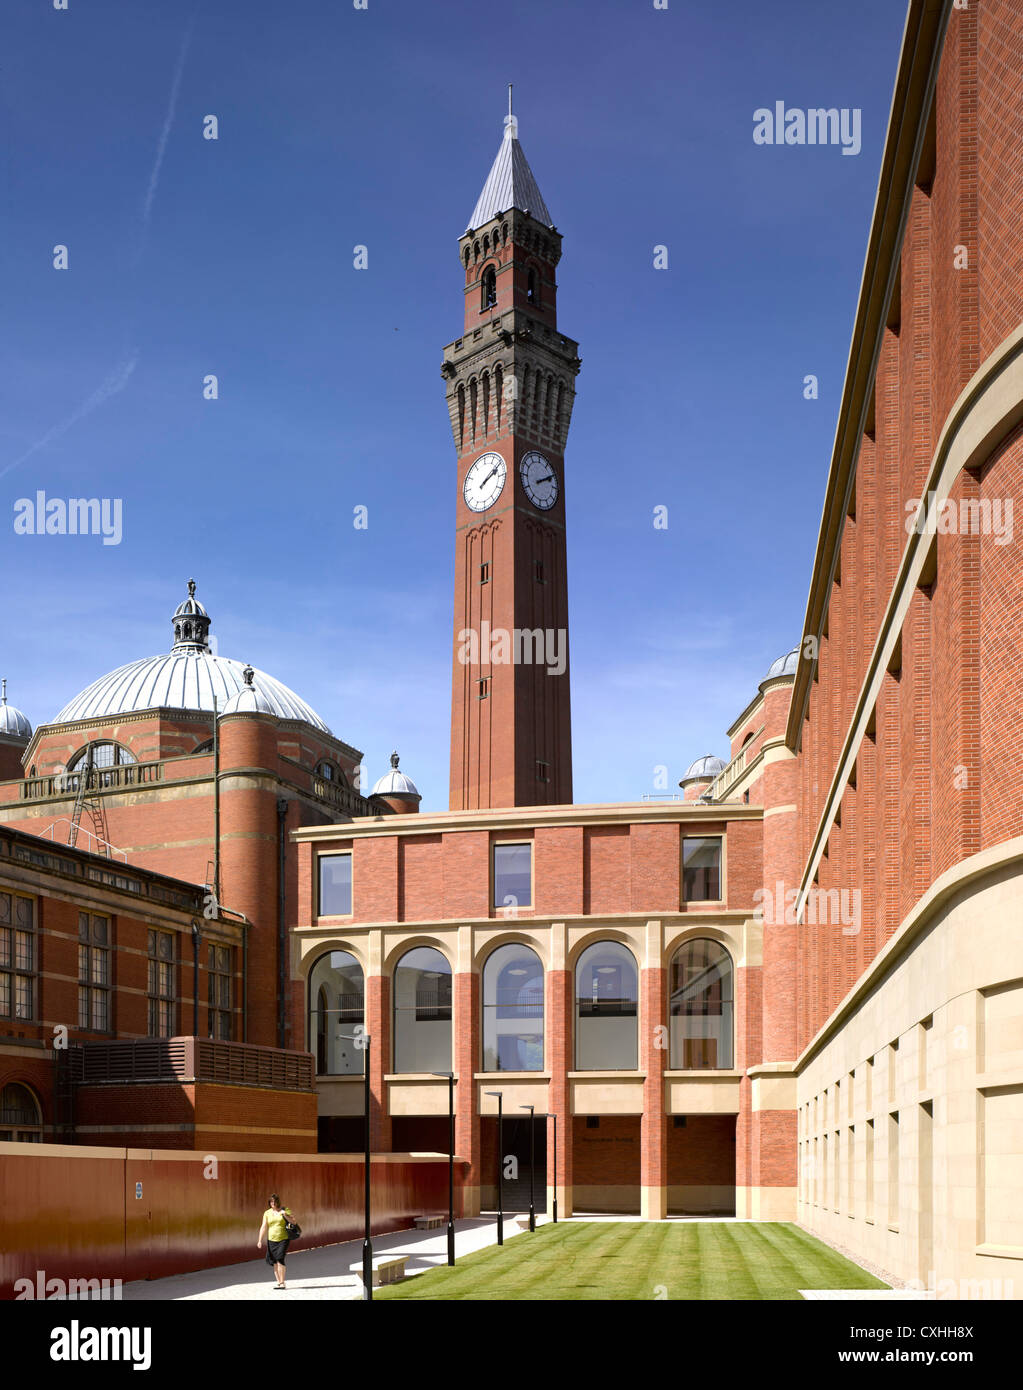 Bramall Musik-Gebäude, Universität von Birmingham, Birmingham, Vereinigtes Königreich. Architekt: Glenn Howells Architects, 2012. Stockfoto